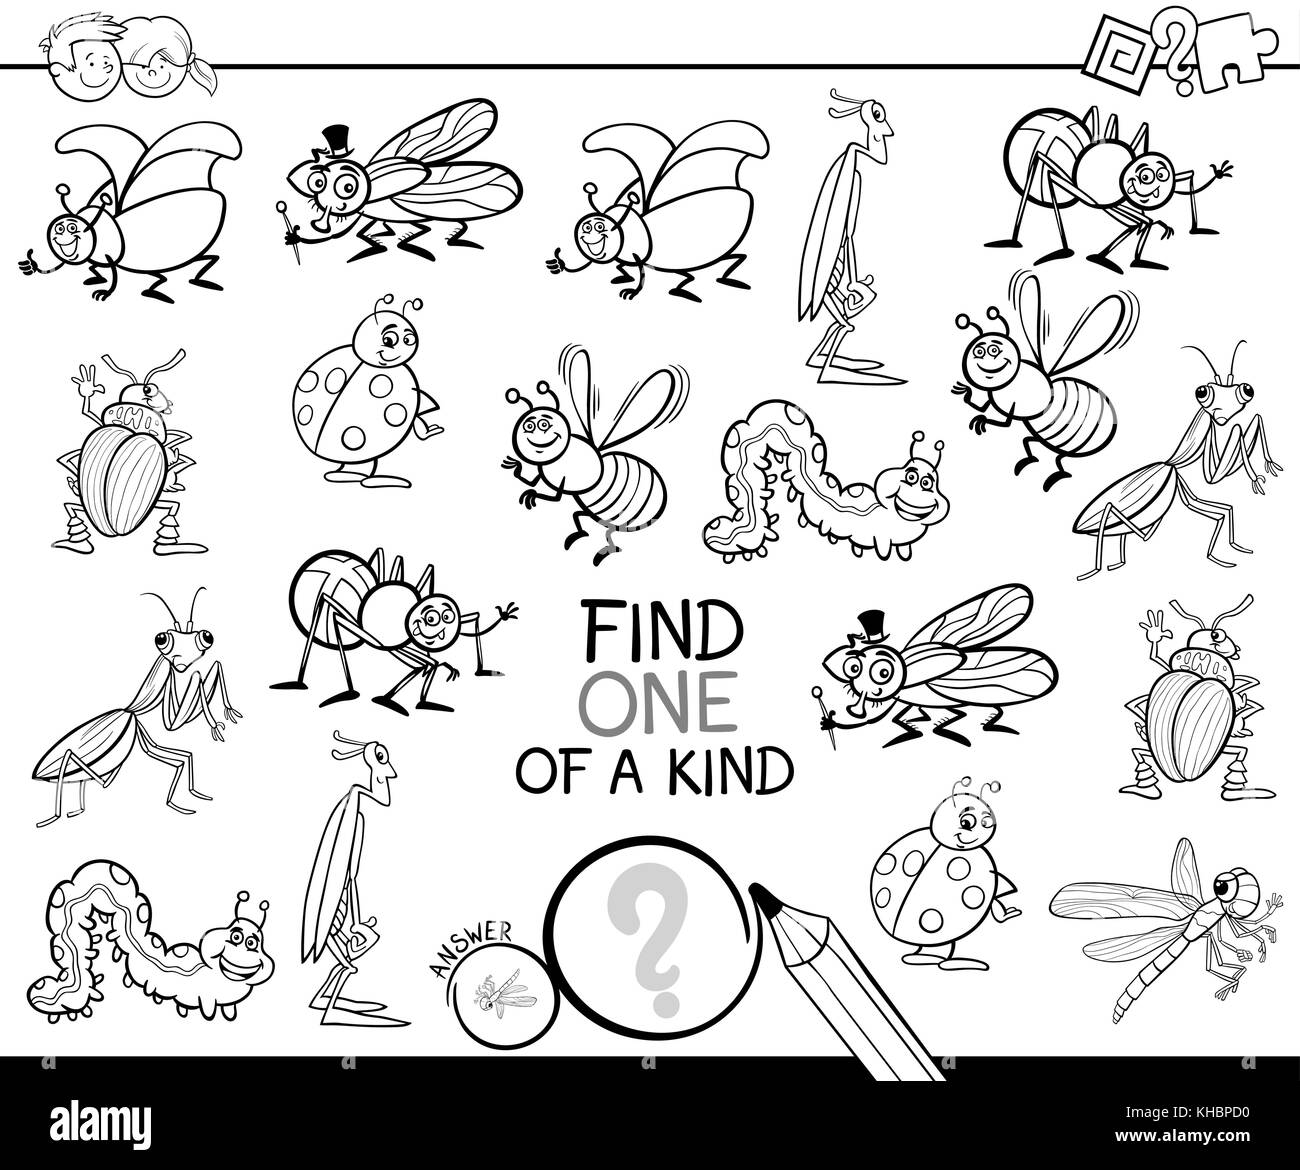 Illustration cartoon noir et blanc de trouver un d'une sorte de jeu d'activités éducatives pour les enfants avec des personnages de bande dessinée à colorier d'insectes Illustration de Vecteur